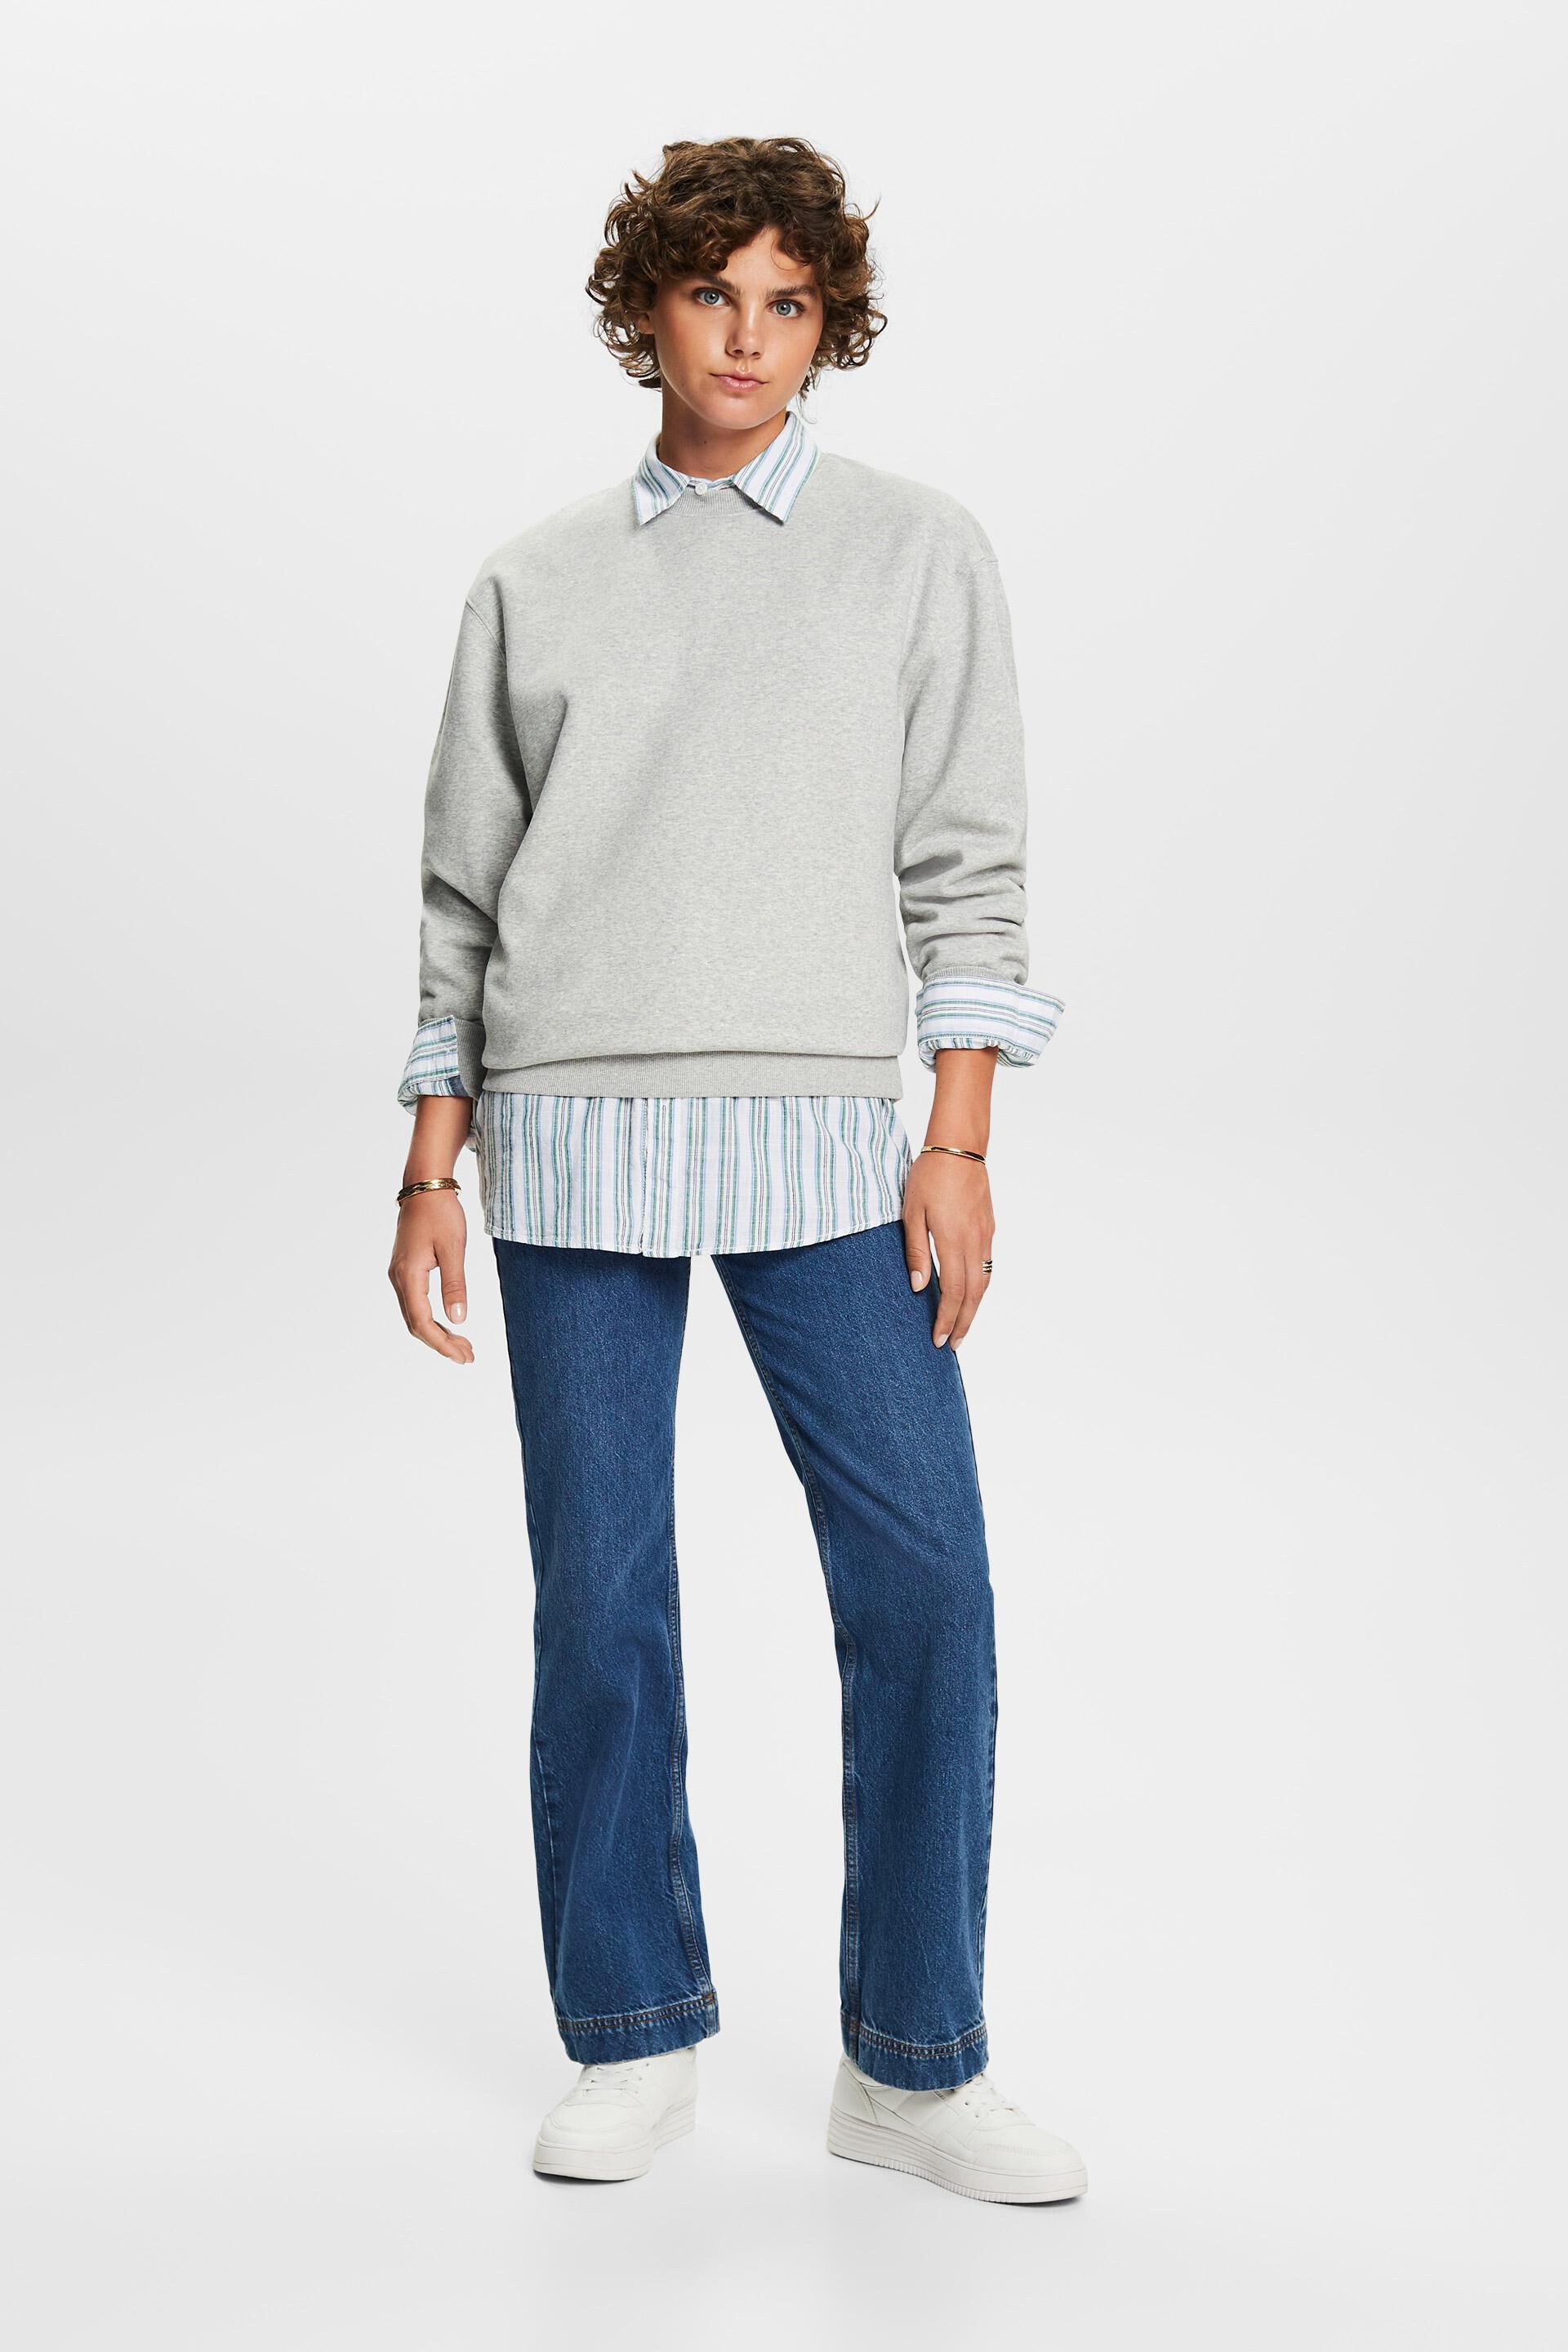 Esprit Baumwollmischung aus Pullover-Sweatshirt